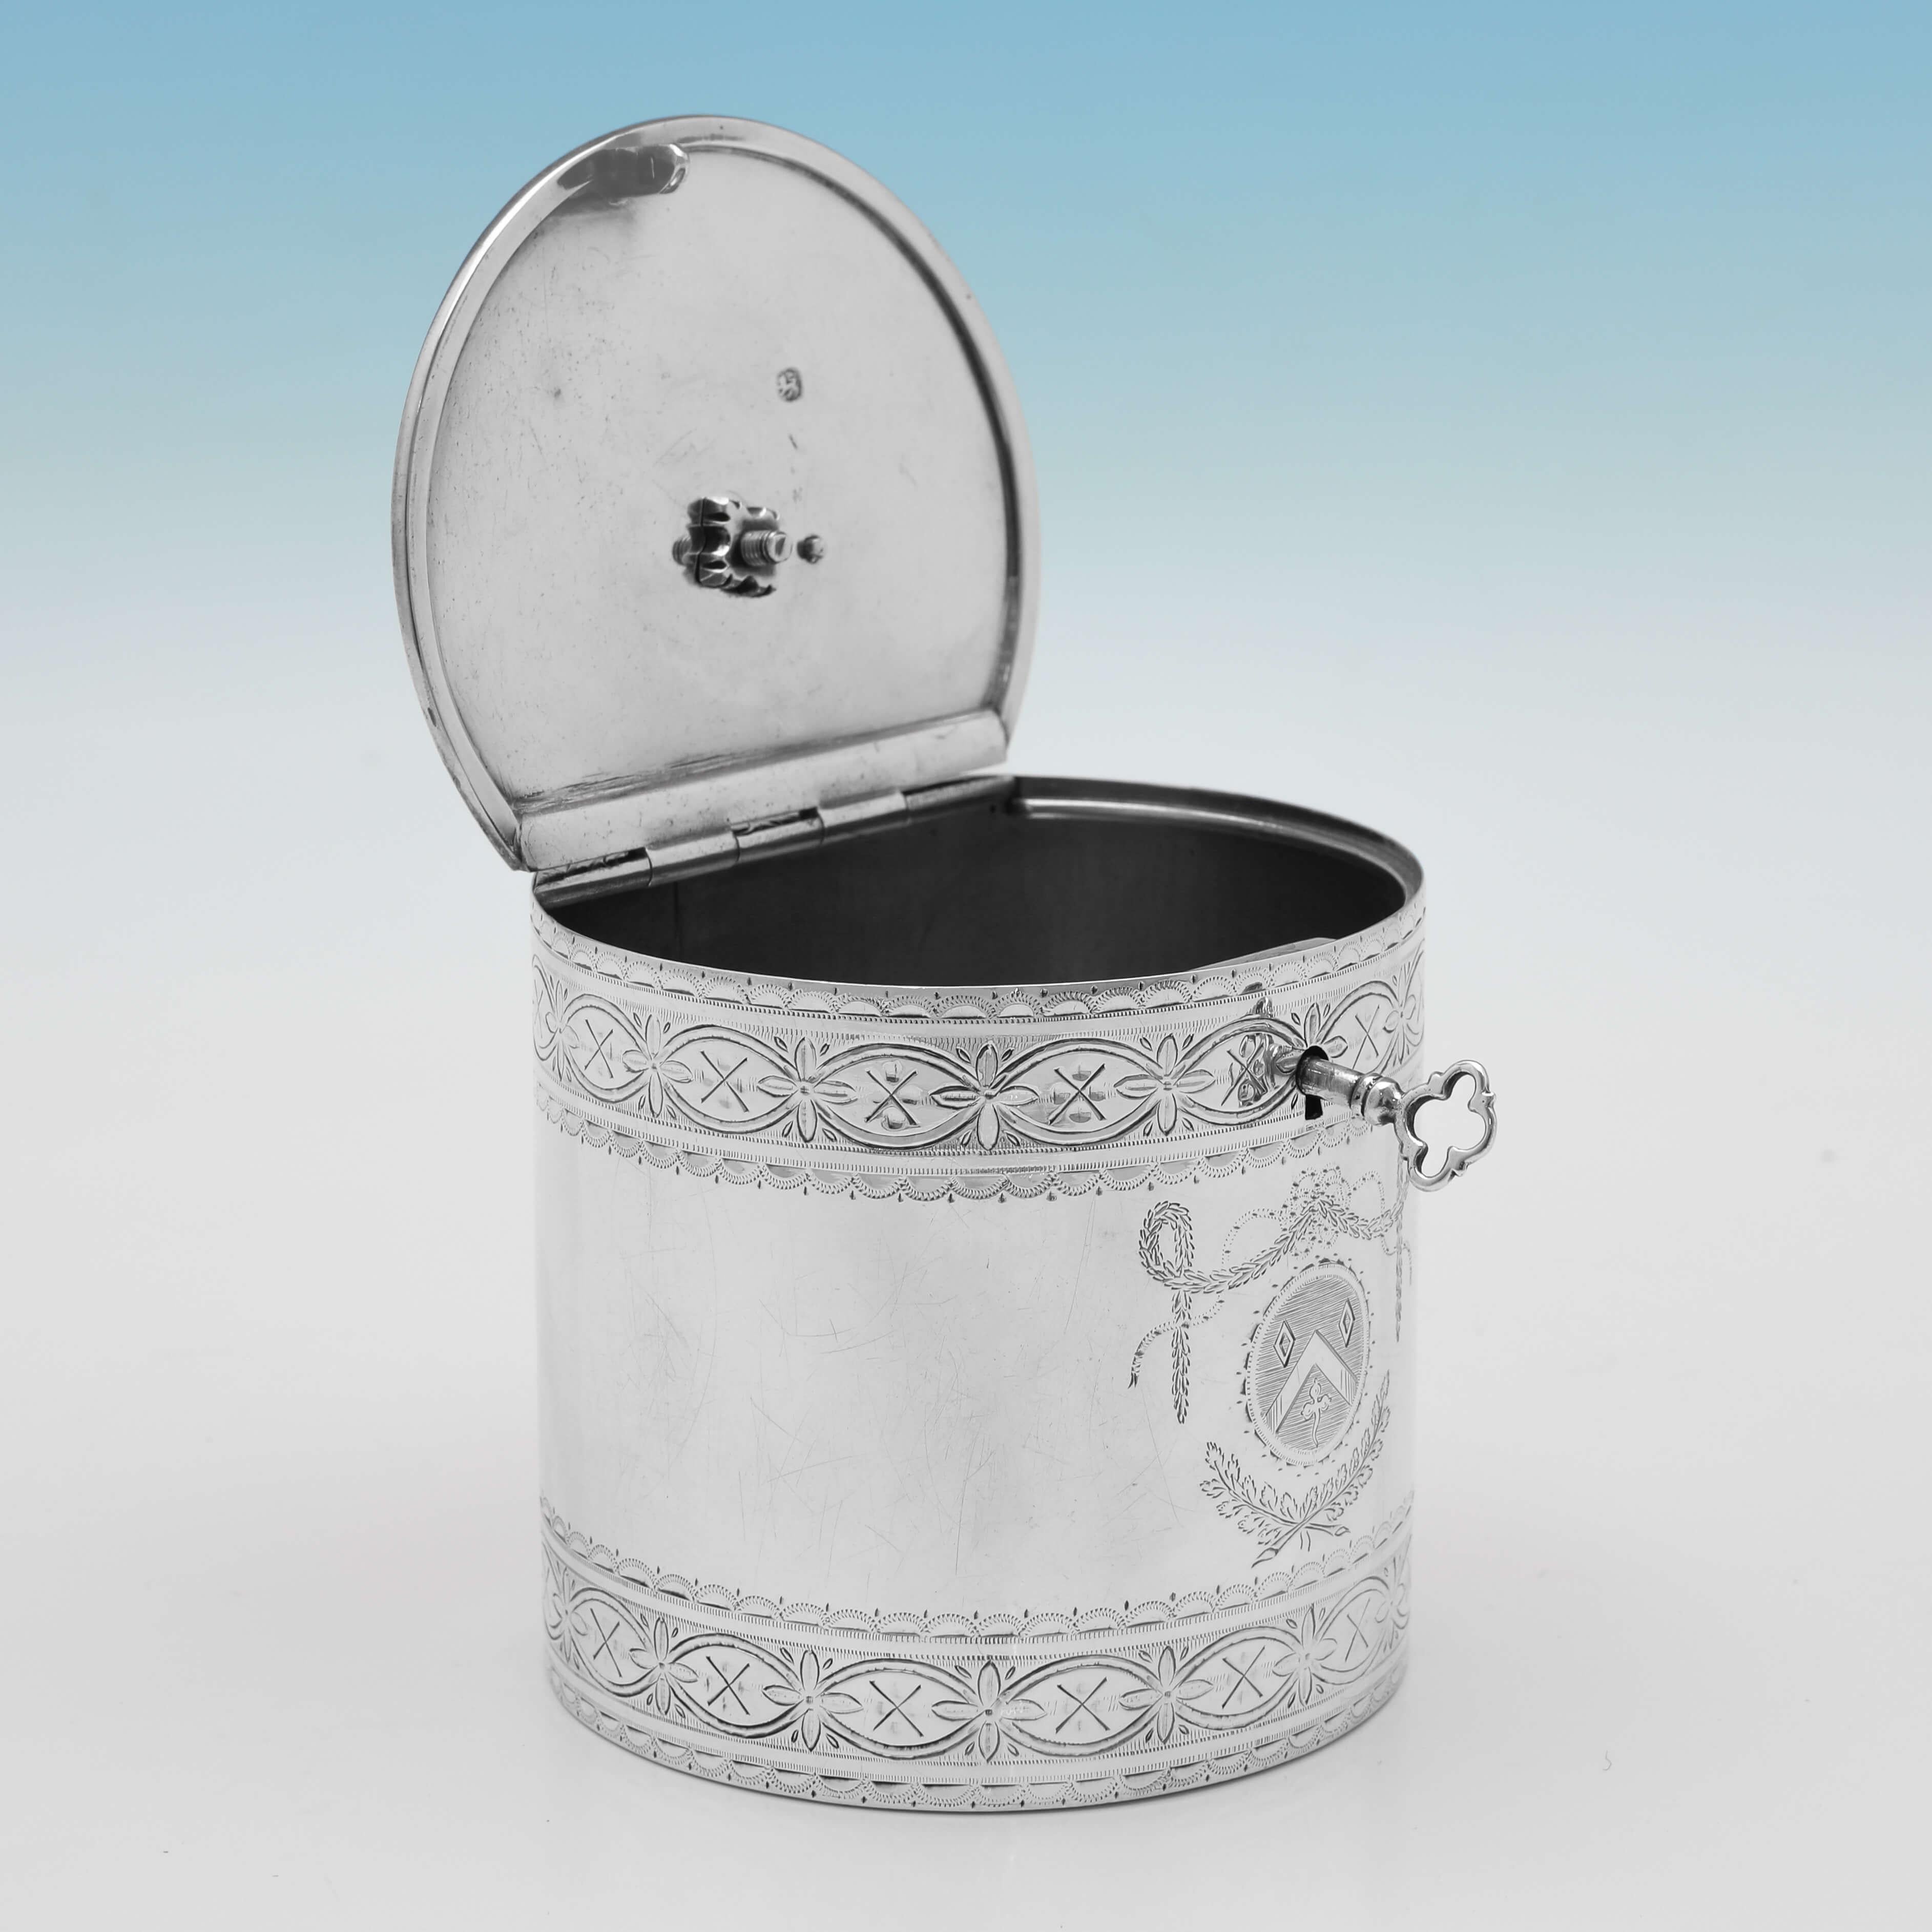 Poinçonnée à Londres en 1775 par Walter Brind, cette charmante boîte à thé ancienne en argent sterling d'époque George III est de forme cylindrique et présente une magnifique décoration gravée sur le corps et le couvercle, la clé d'origine et un